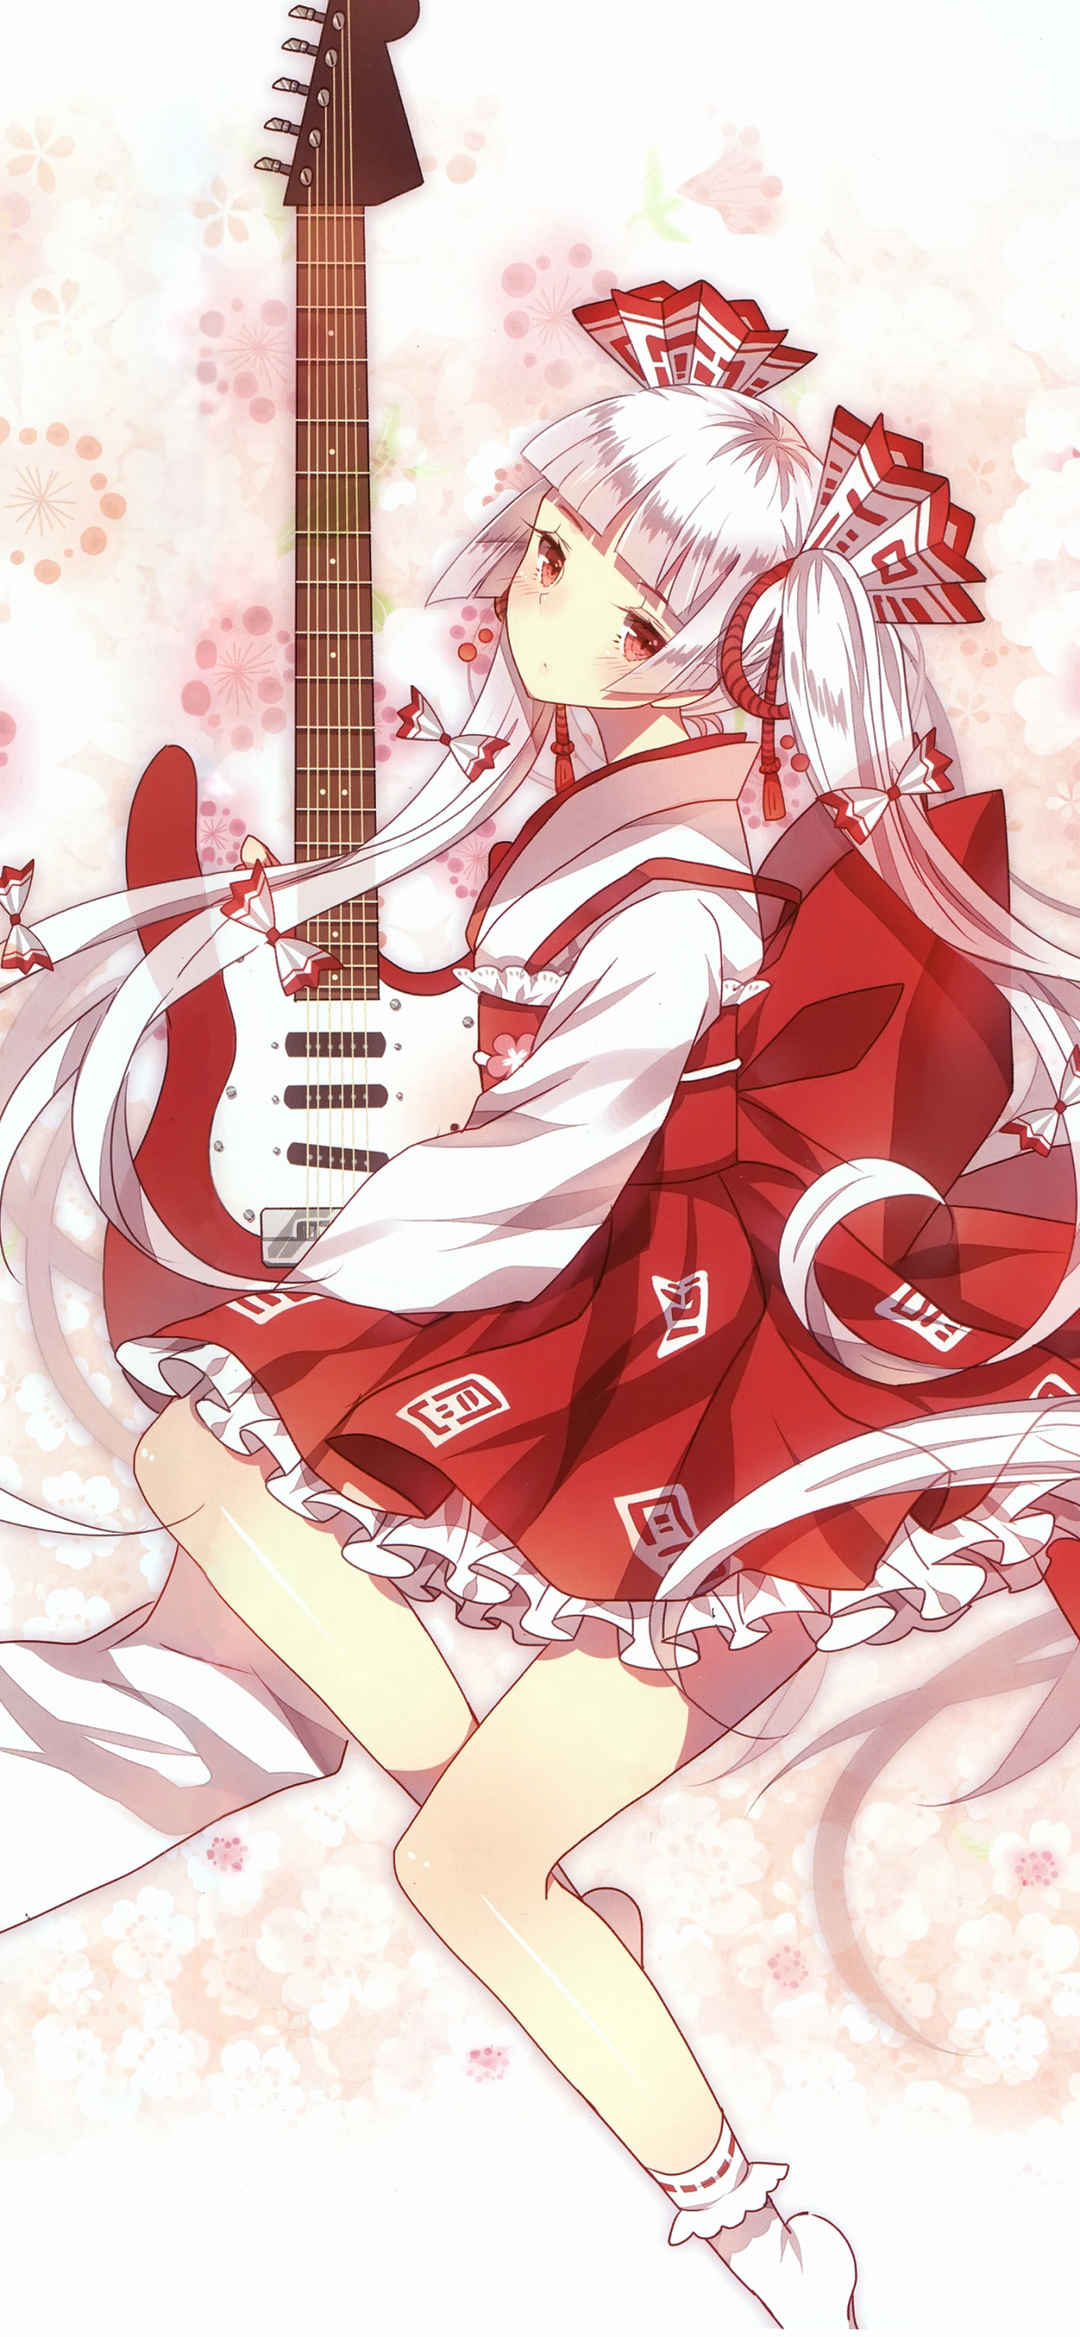 日系可爱风格的动漫美女和他的电吉他-